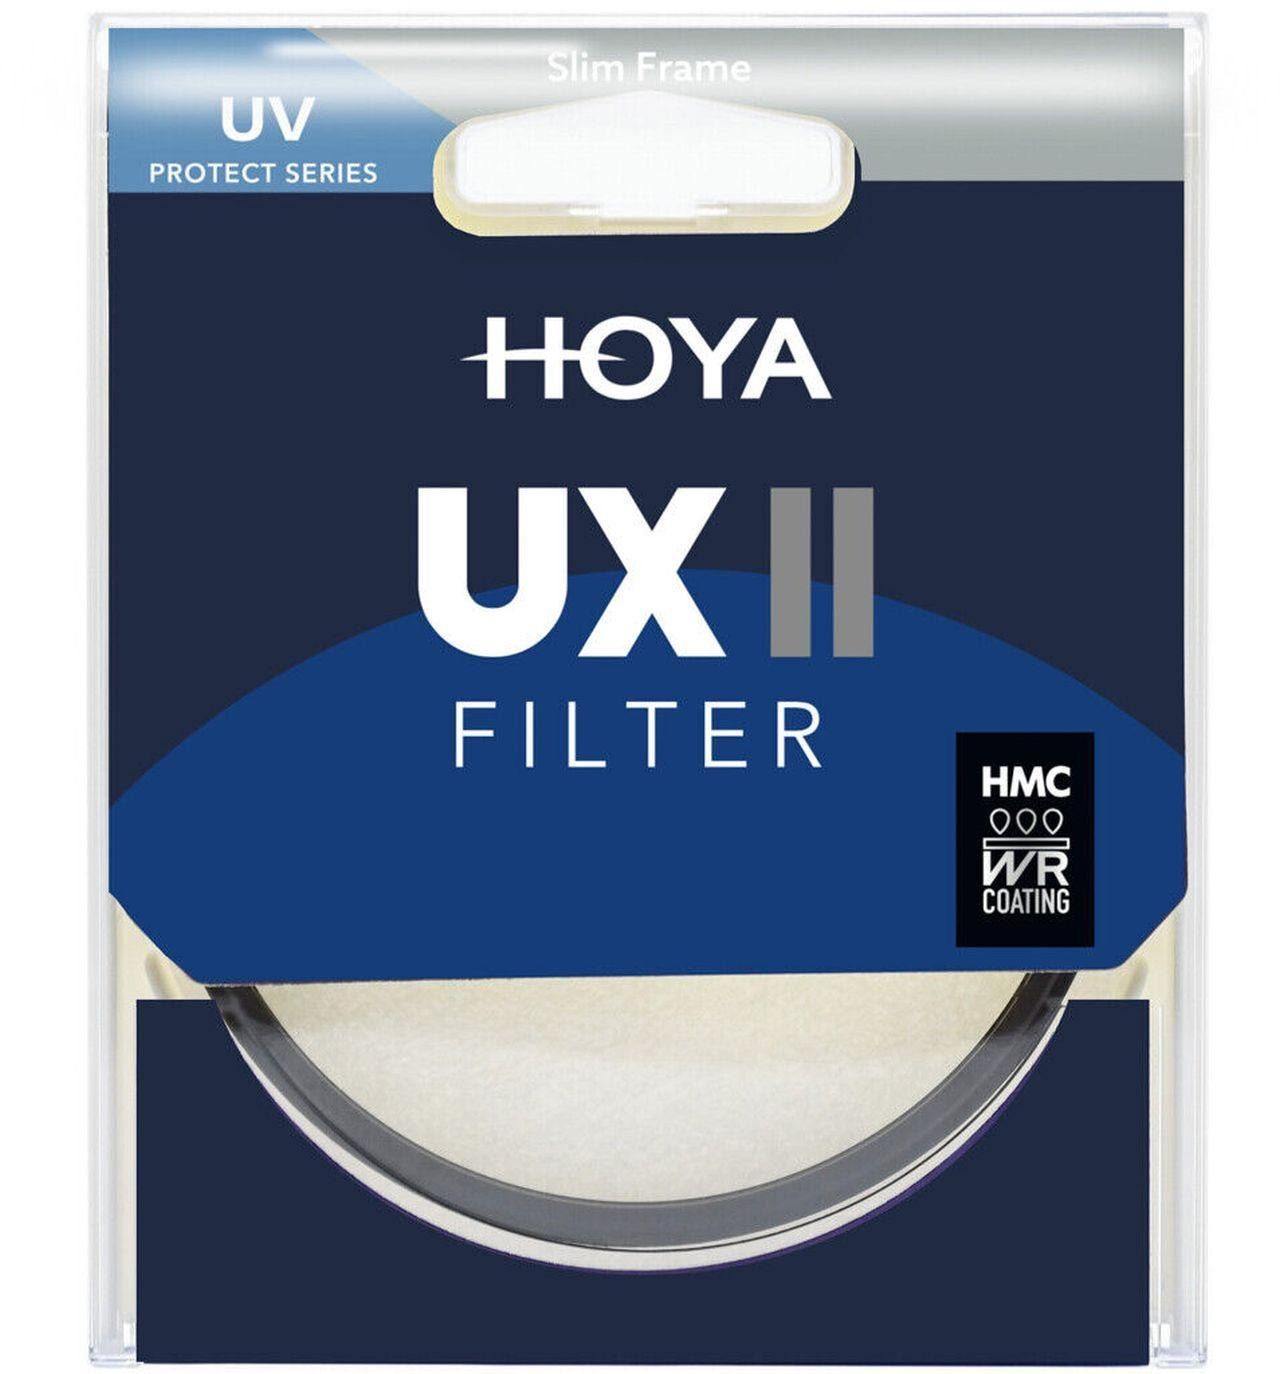 Objektivzubehör UV-Filter Hoya UX II 49mm